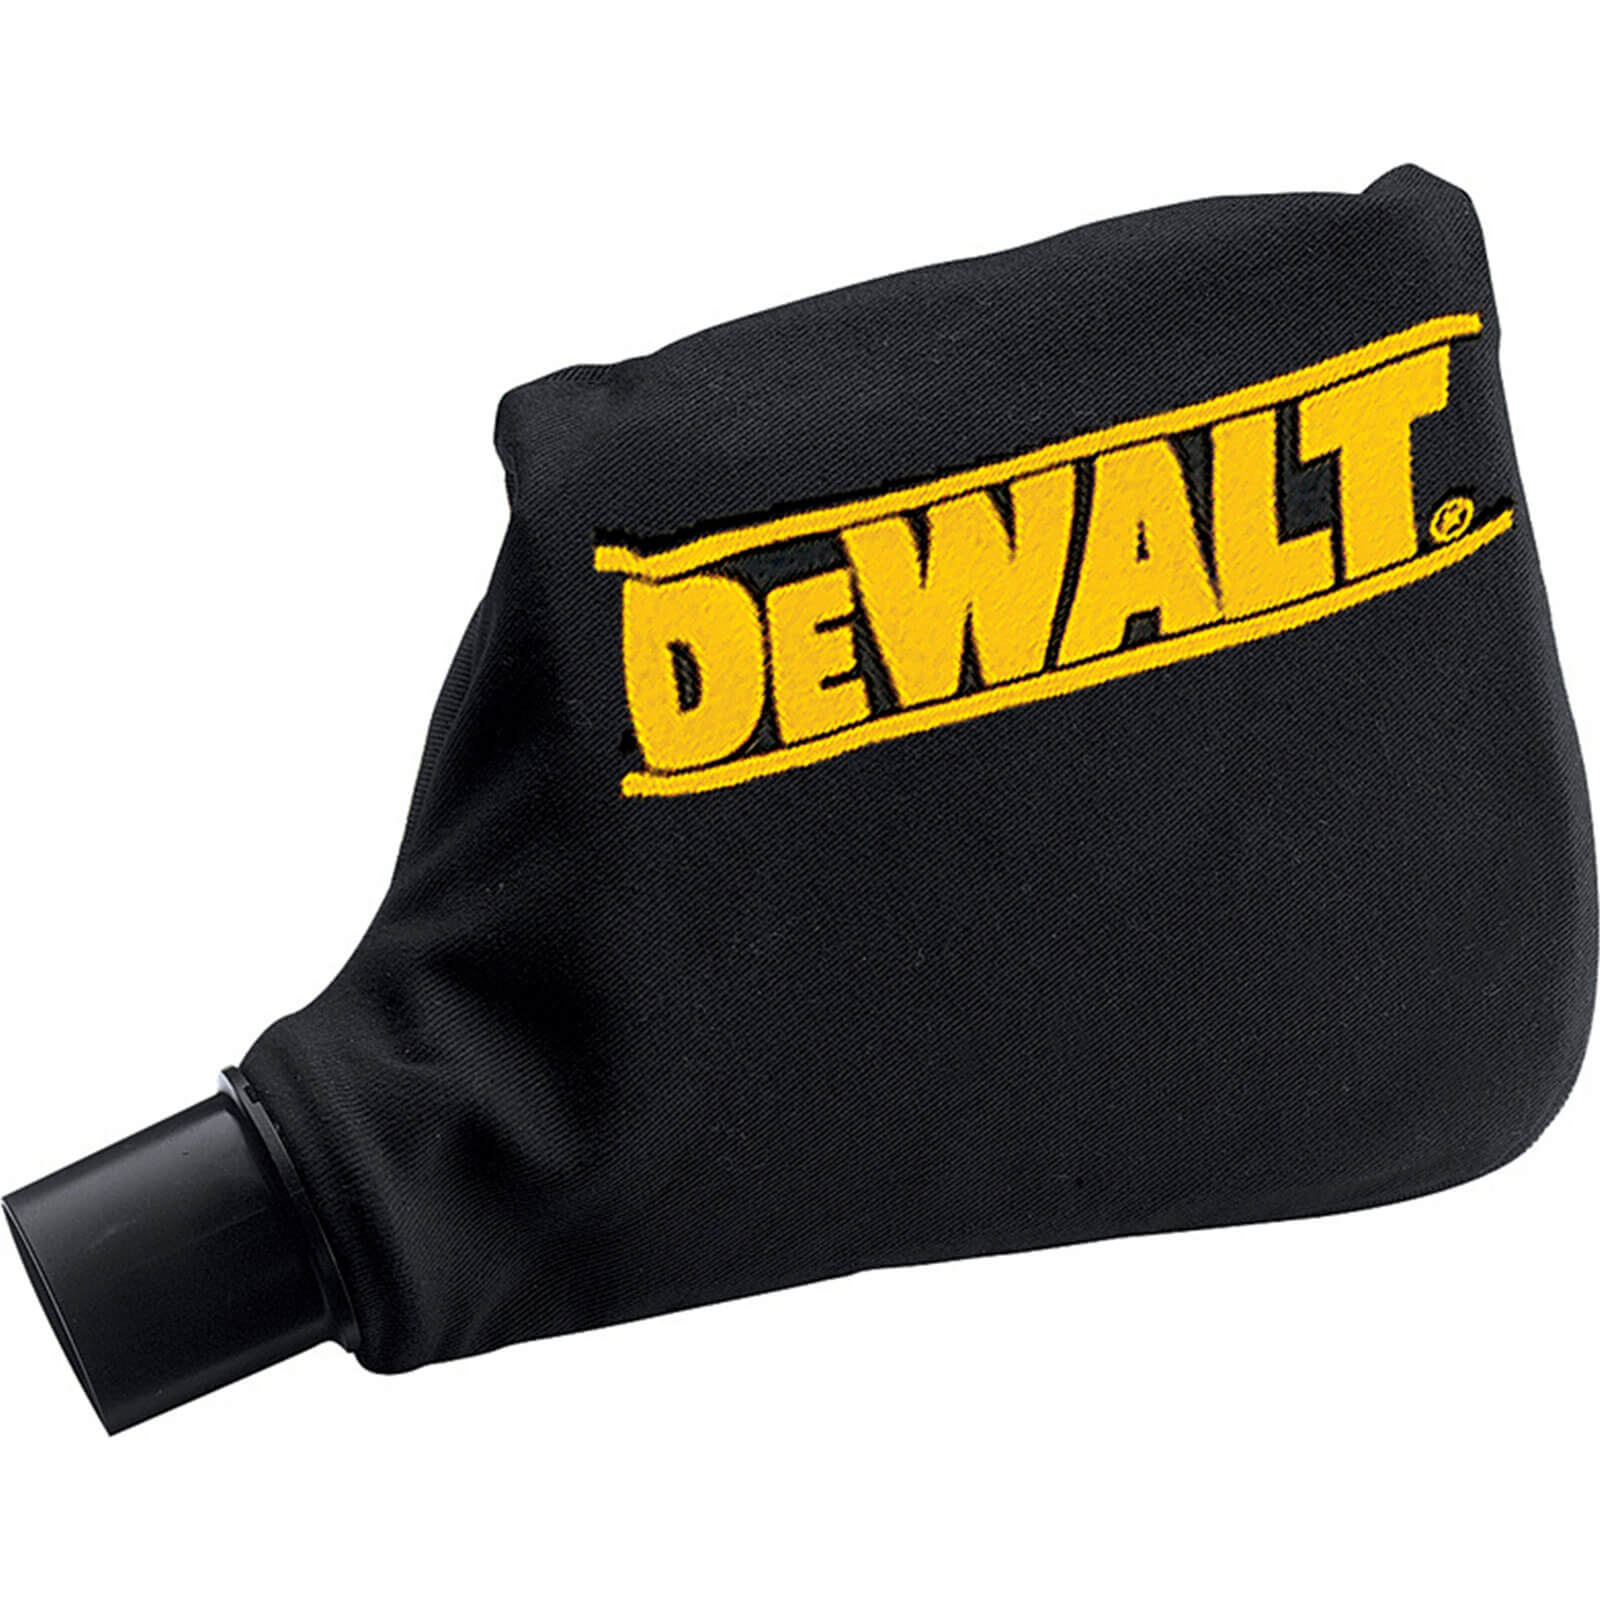 DeWalt Dust Bag For Dw702 / 713 / 718 / D27111 Mitre Saws